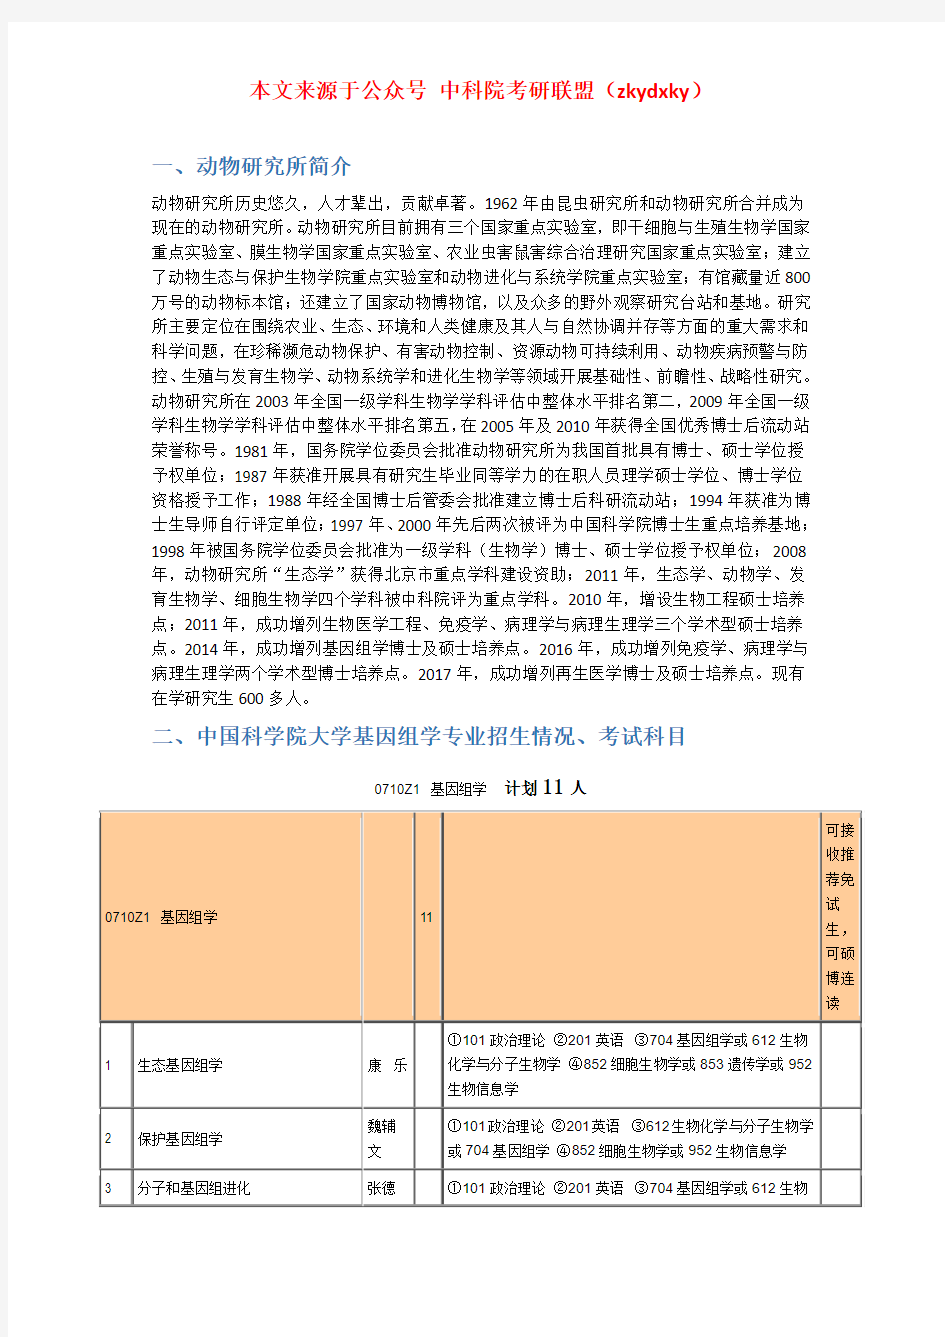 2020-2021年中国科学院大学基因组学考研招生情况、分数线、参考书目等信息汇总